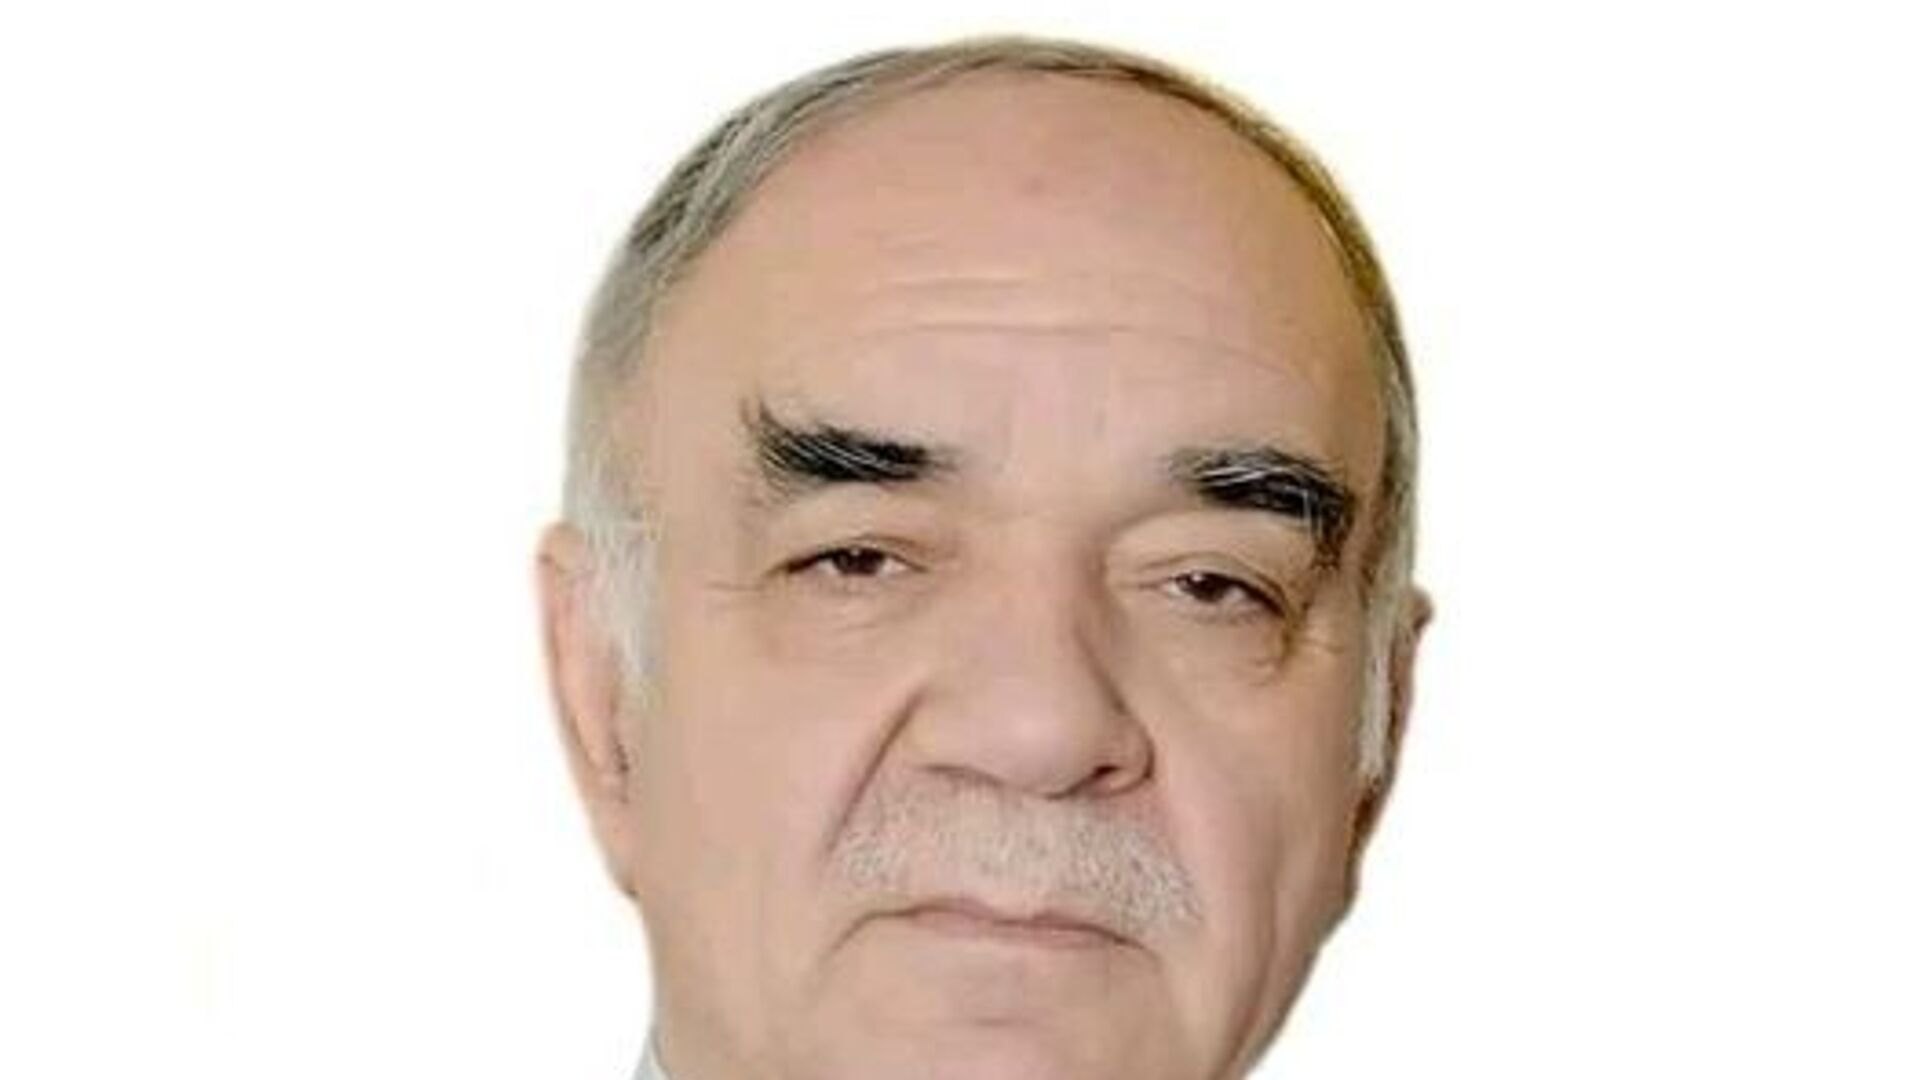 Даргузашти Абдушукури Абдусаттор, профессор ва адабиётшинос - Sputnik Таджикистан, 1920, 23.03.2021